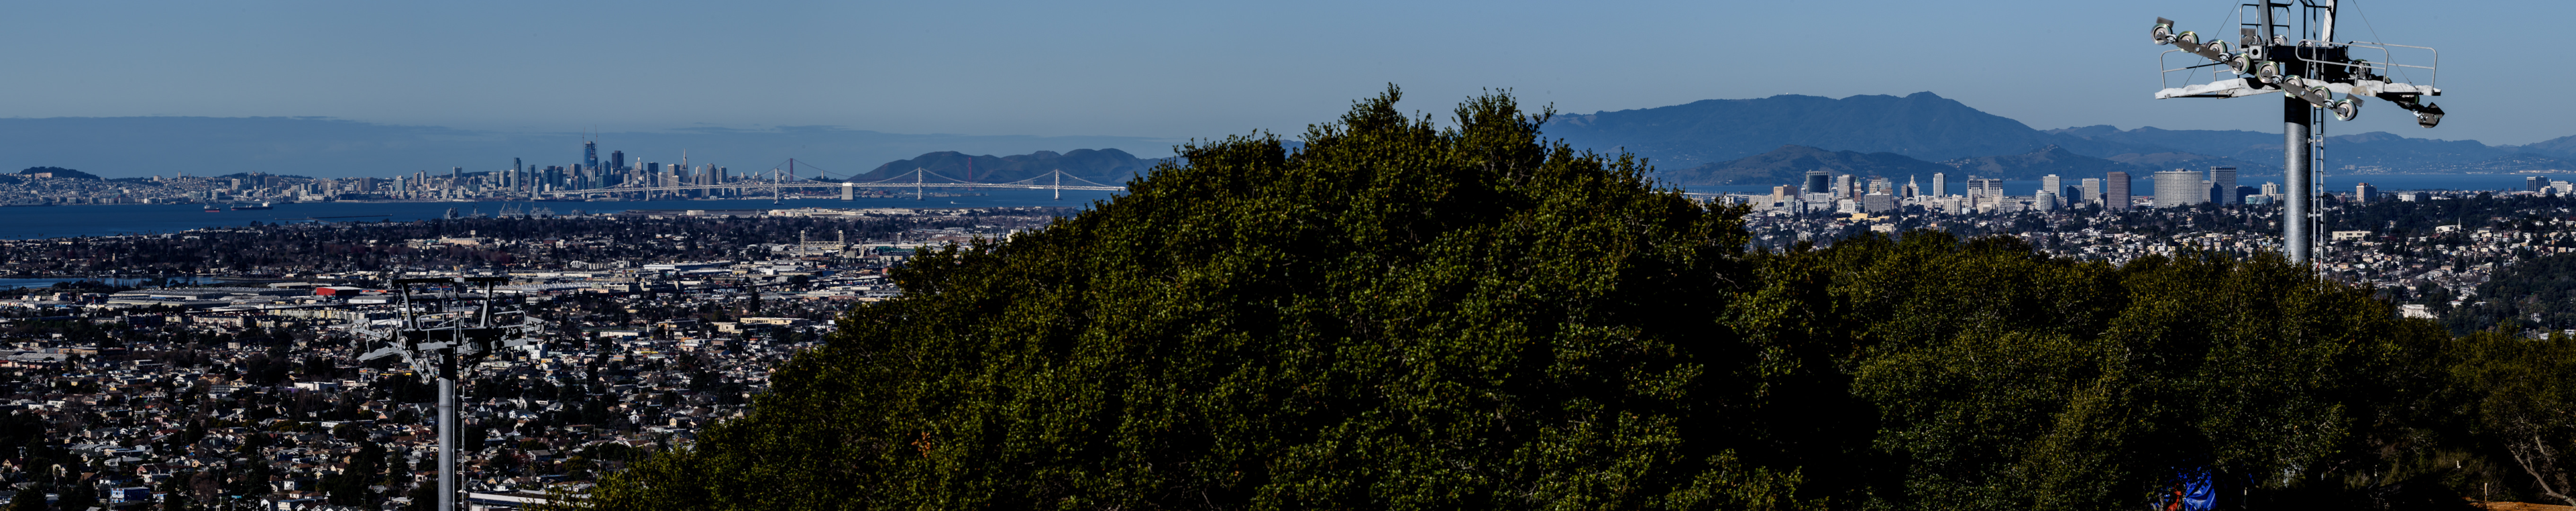 Bison Overlooks Blick auf die Stadt Oakland, die Bay Bridge und San Francisco im Hintergrund